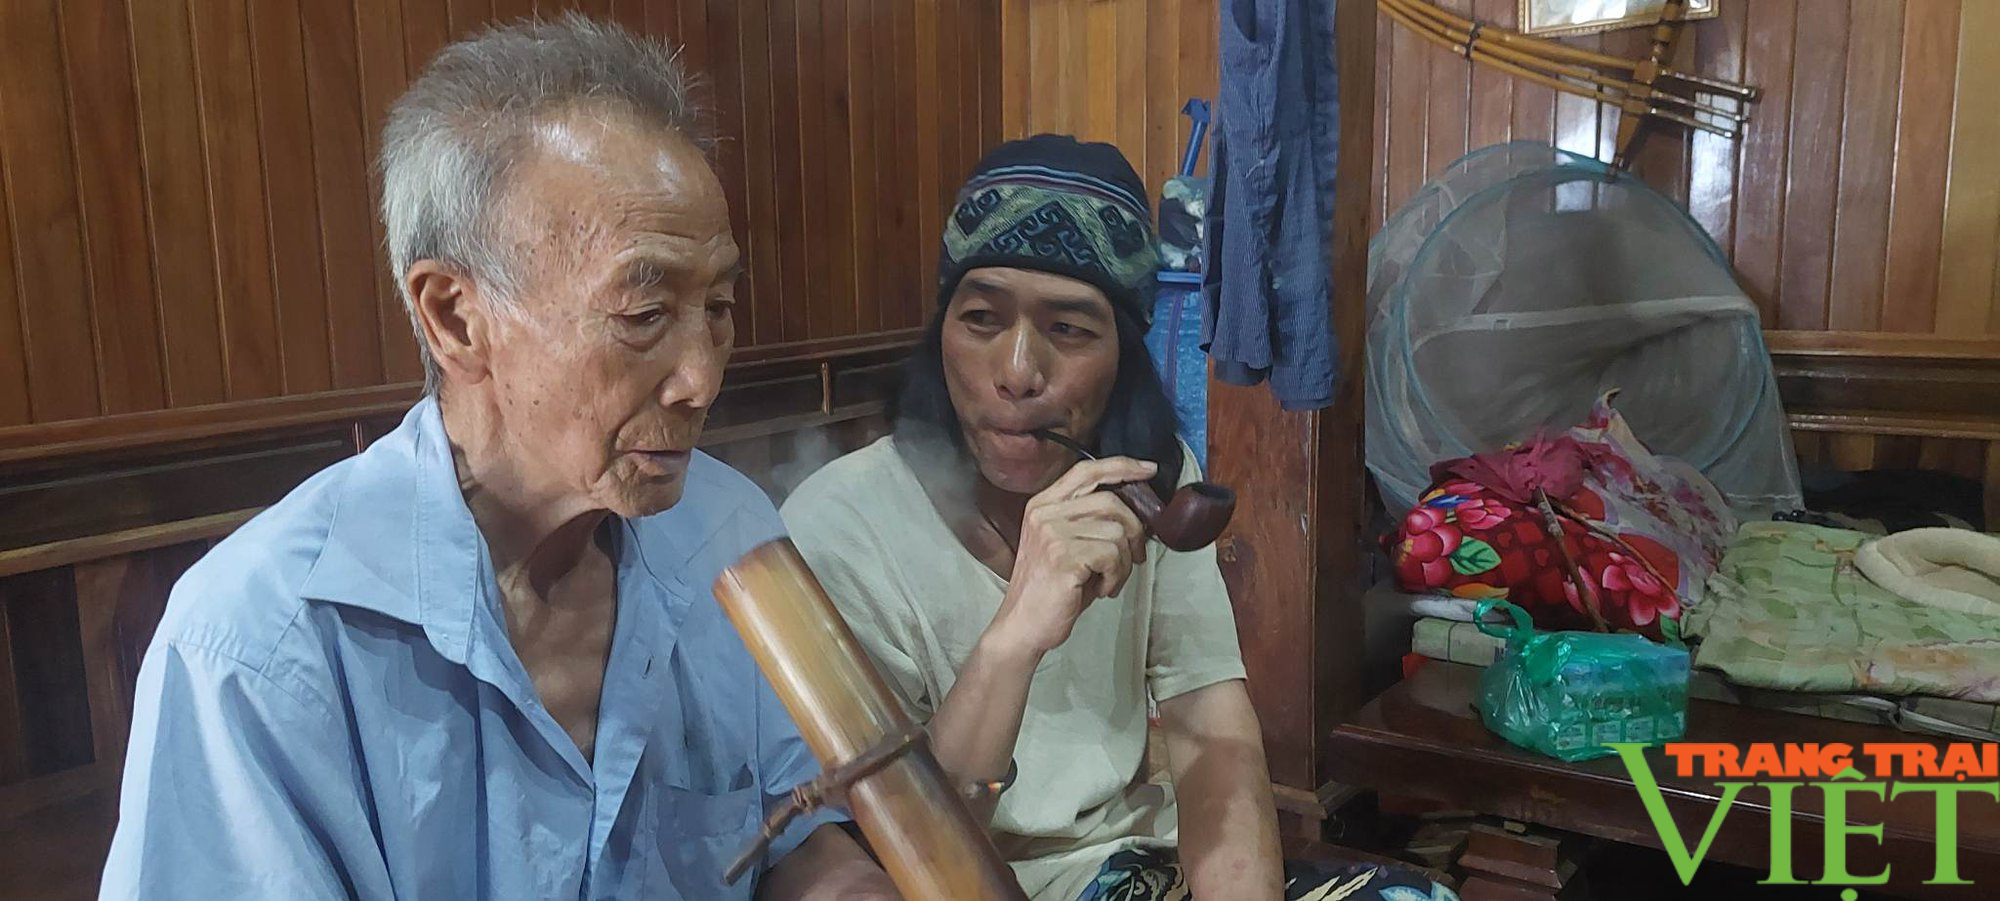 Lên đỉnh Pà Cò, nghe lão cụ ông 110 tuổi kể chuyện cai nghiện thuốc phiện - Ảnh 3.